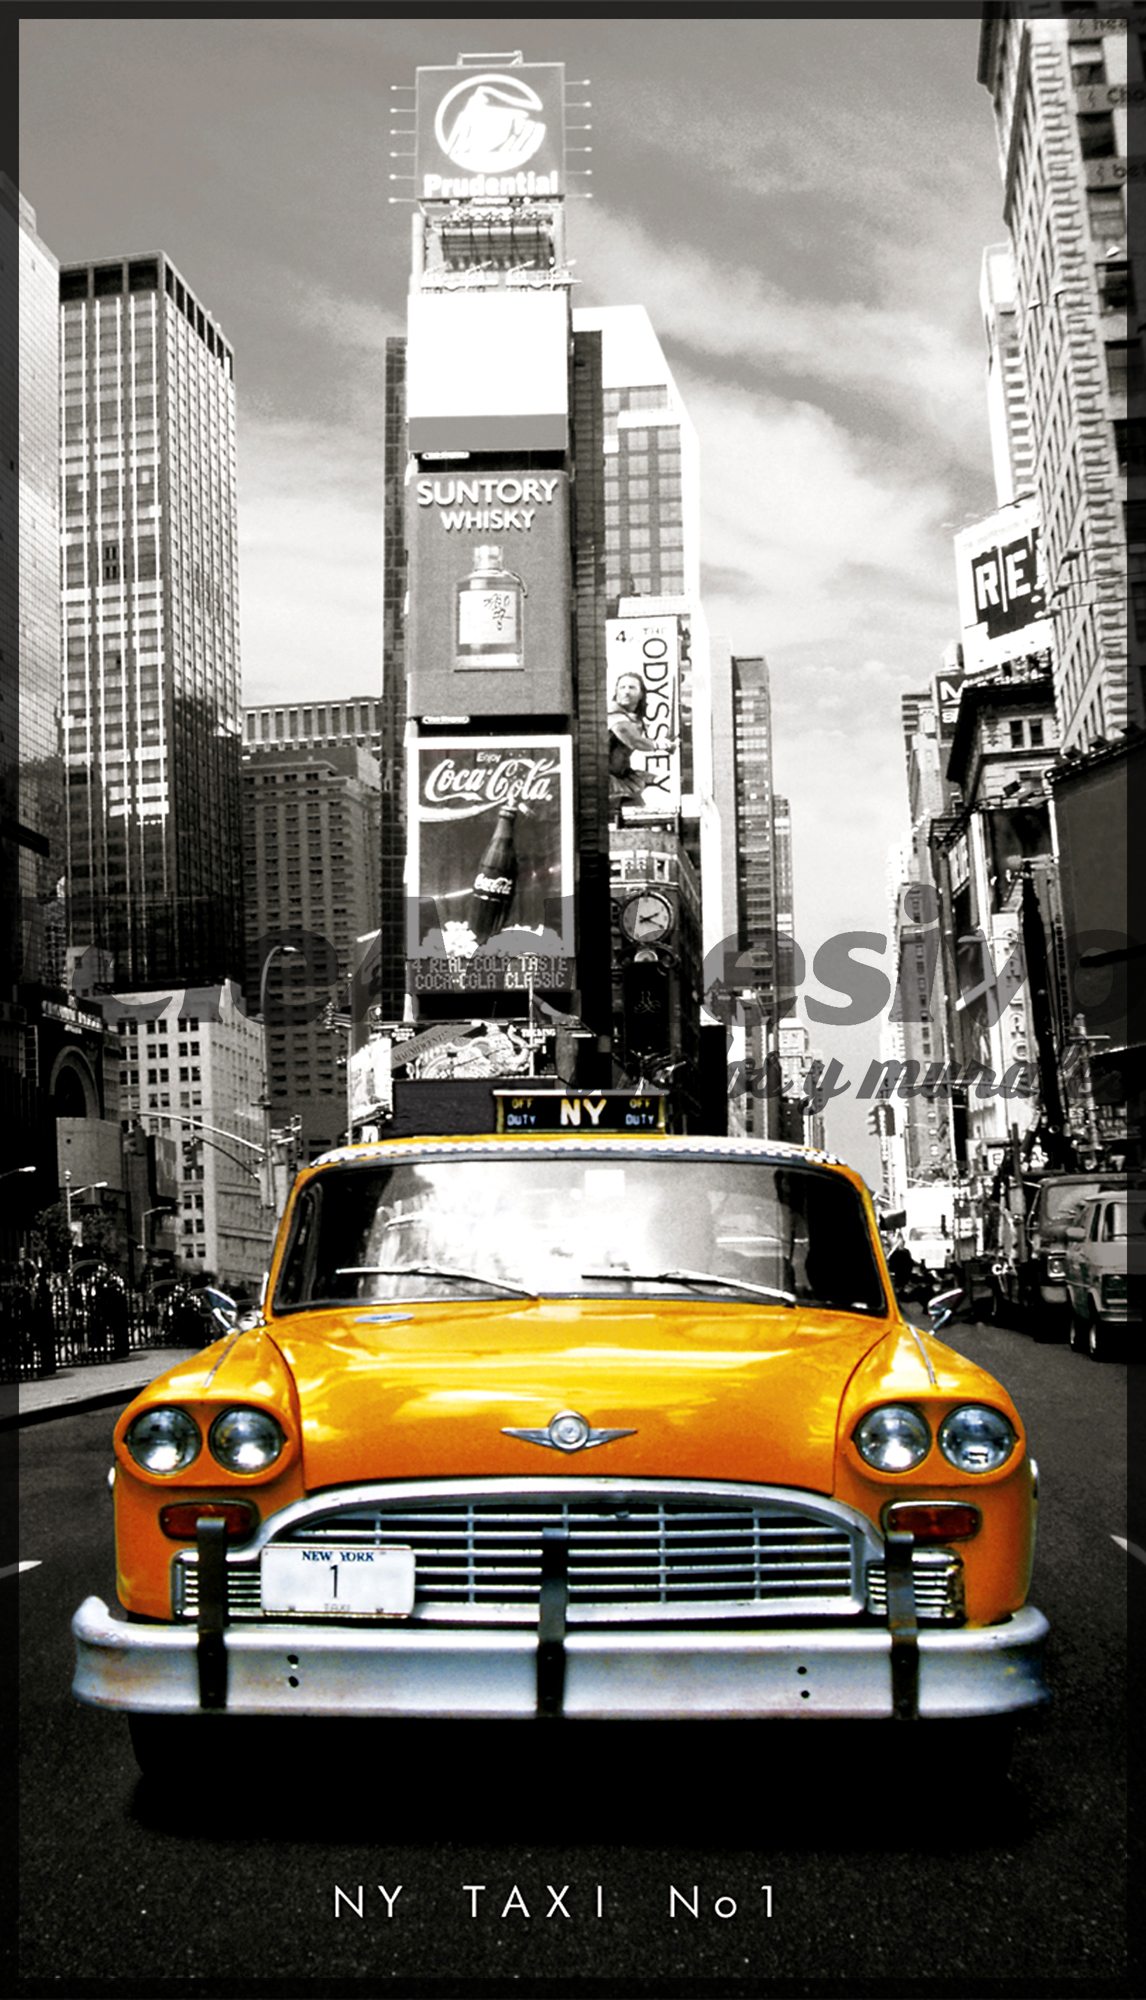 Fotomurali : Taxi di New York